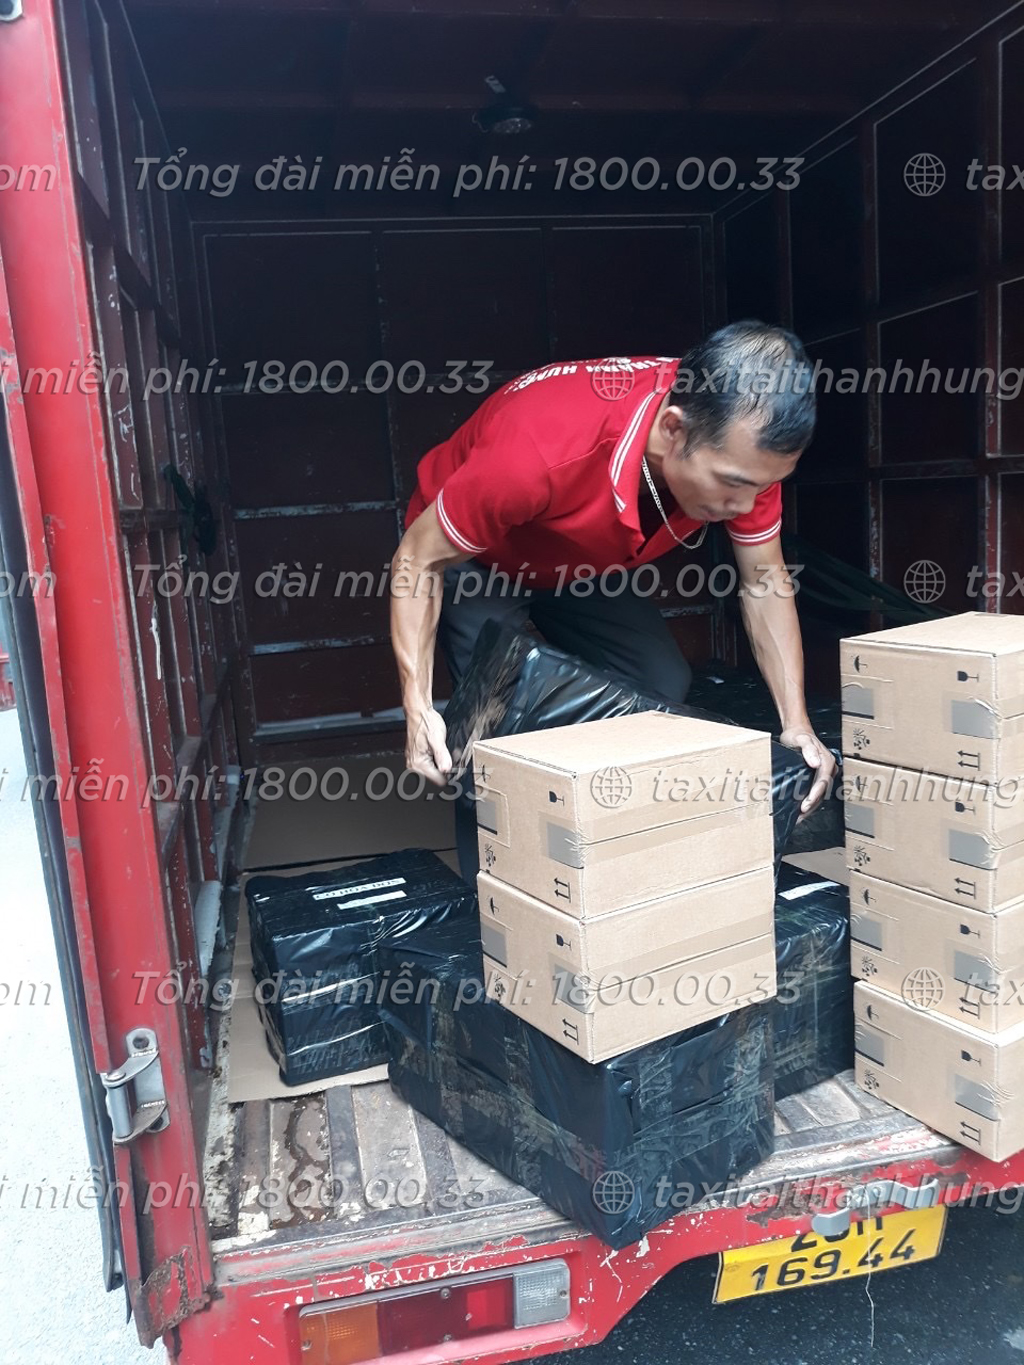 Dịch vụ chuyển văn phòng giá rẻ tại Hà Nội